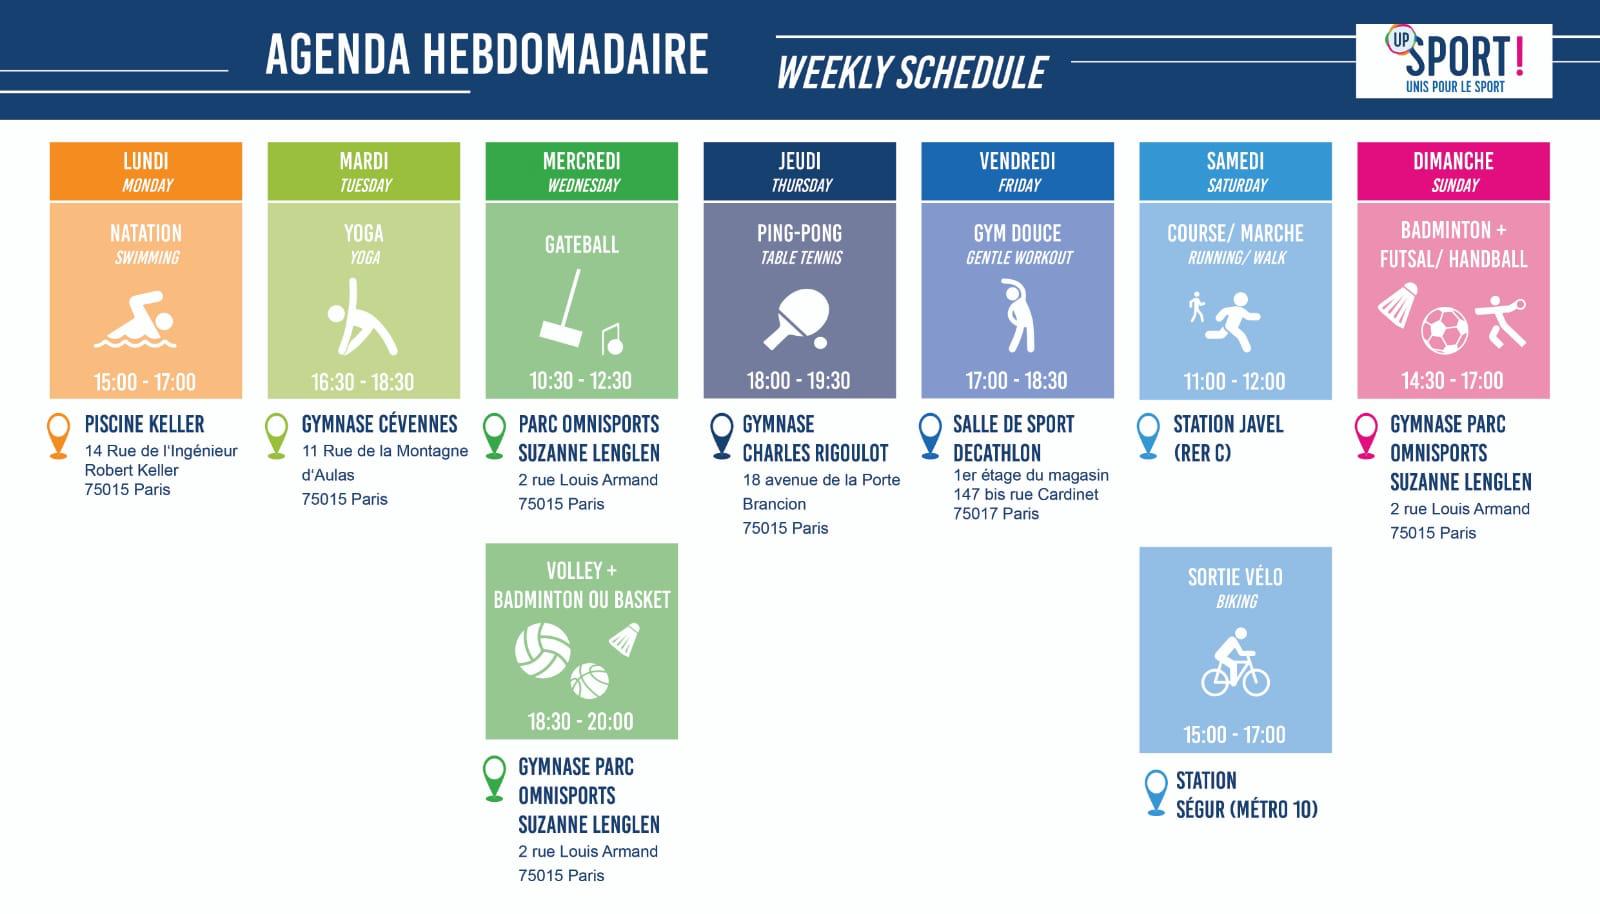 agenda up sport semaine